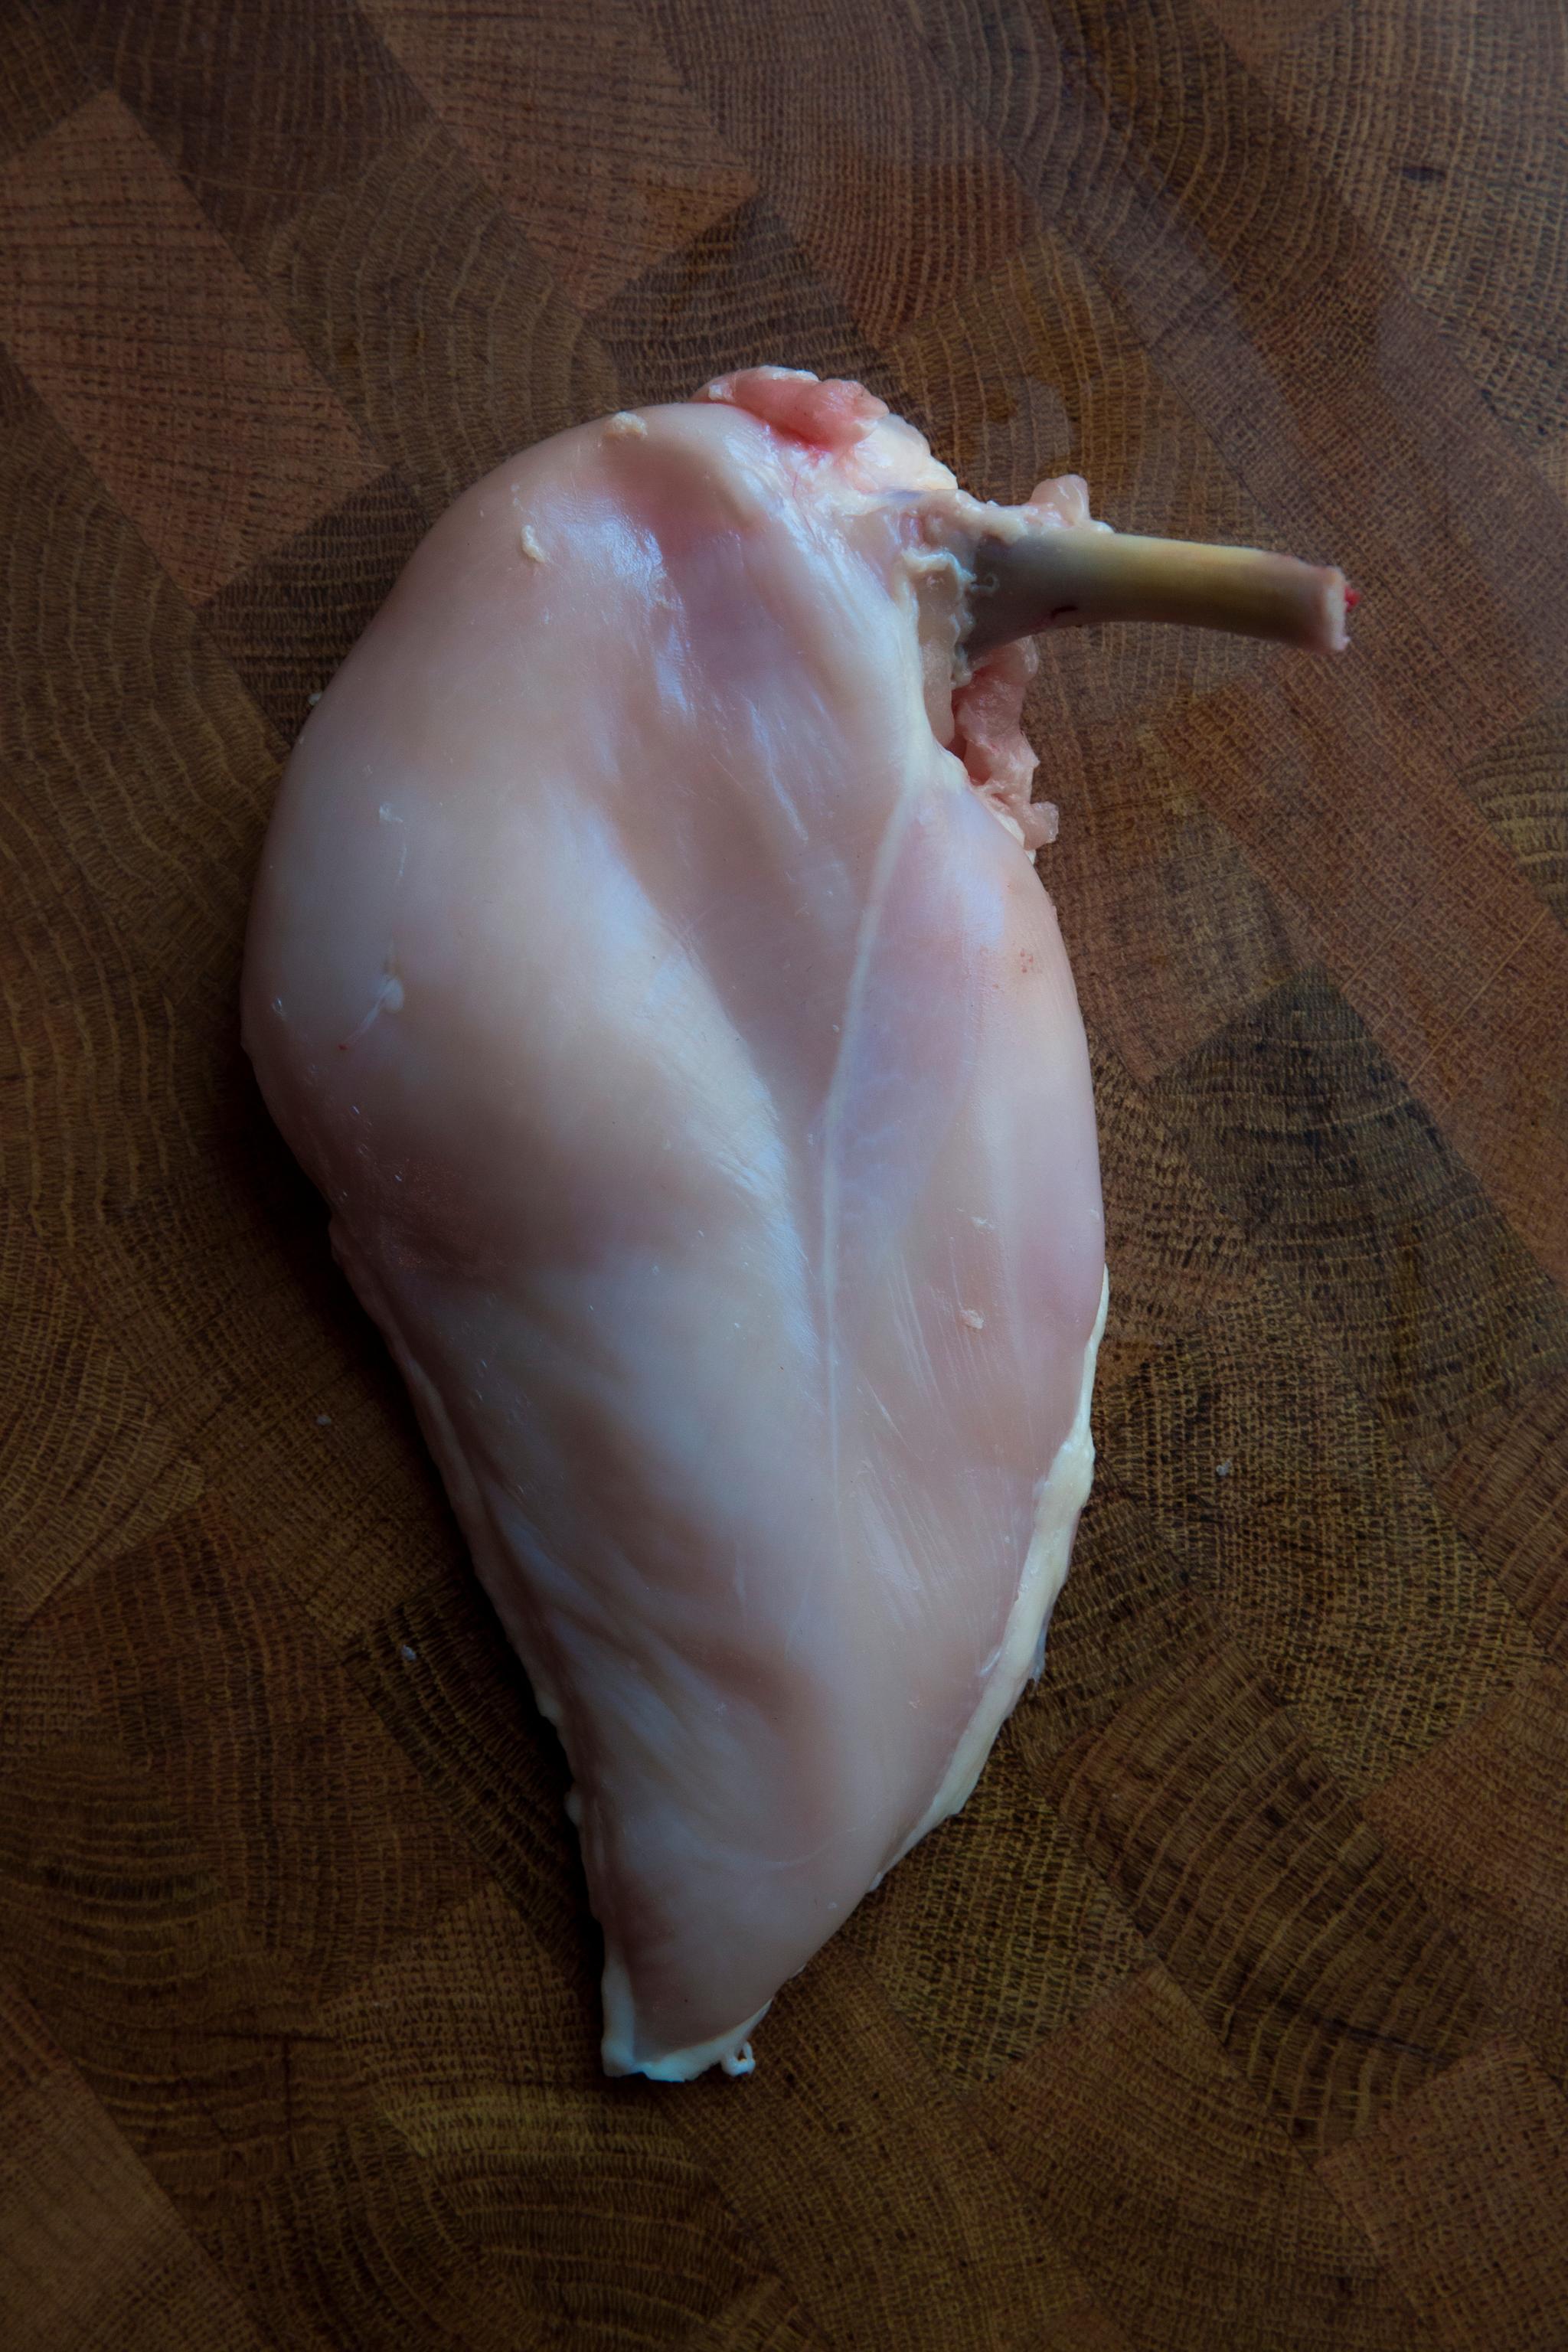 Fjern skinnet på kyllingbrystet før du bretter det ut og banker det (se oppskriften).